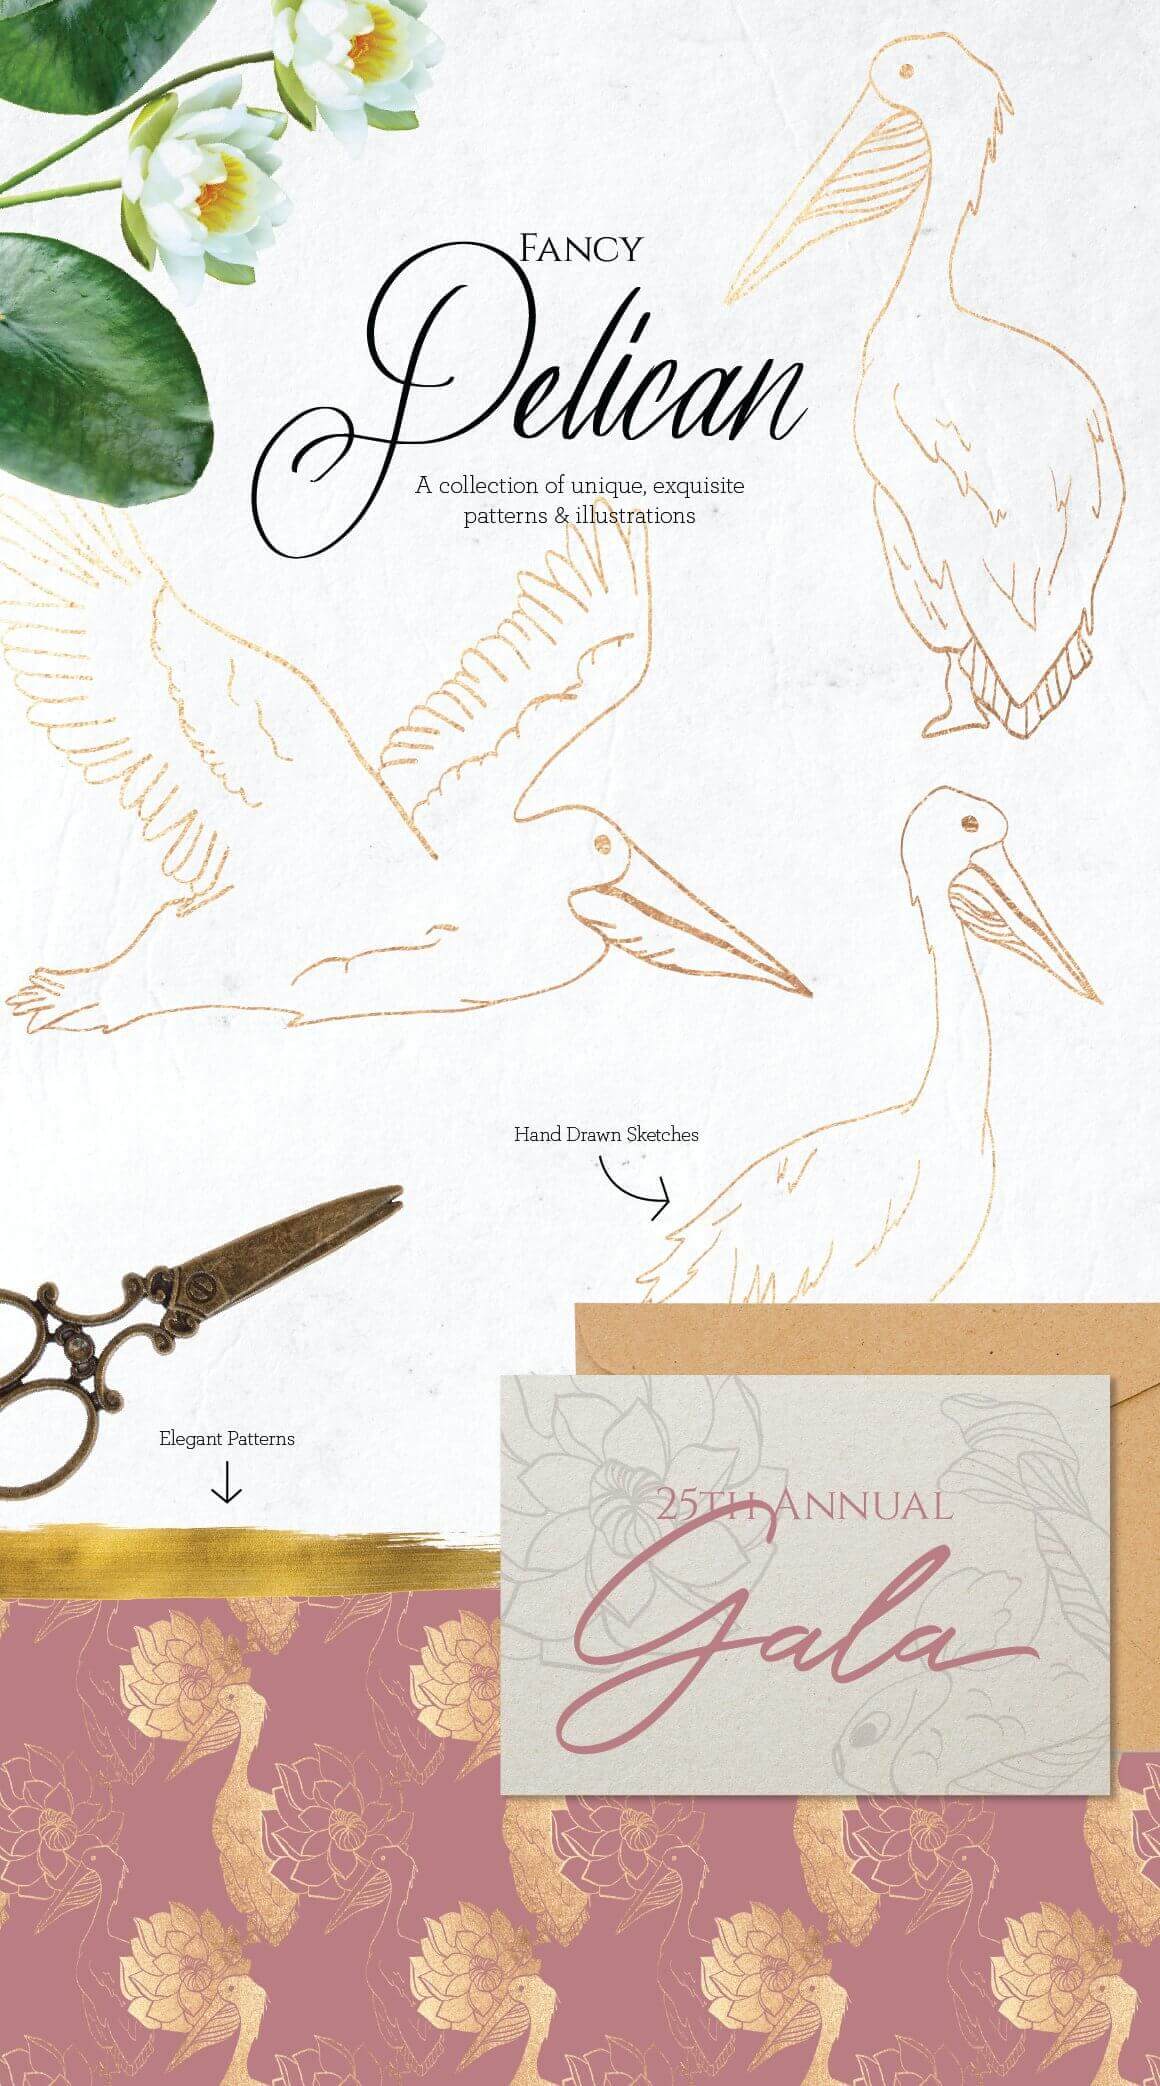 Inscription: "Fancy Pelican, A collection of unique, exquisite patterns & illustrations.